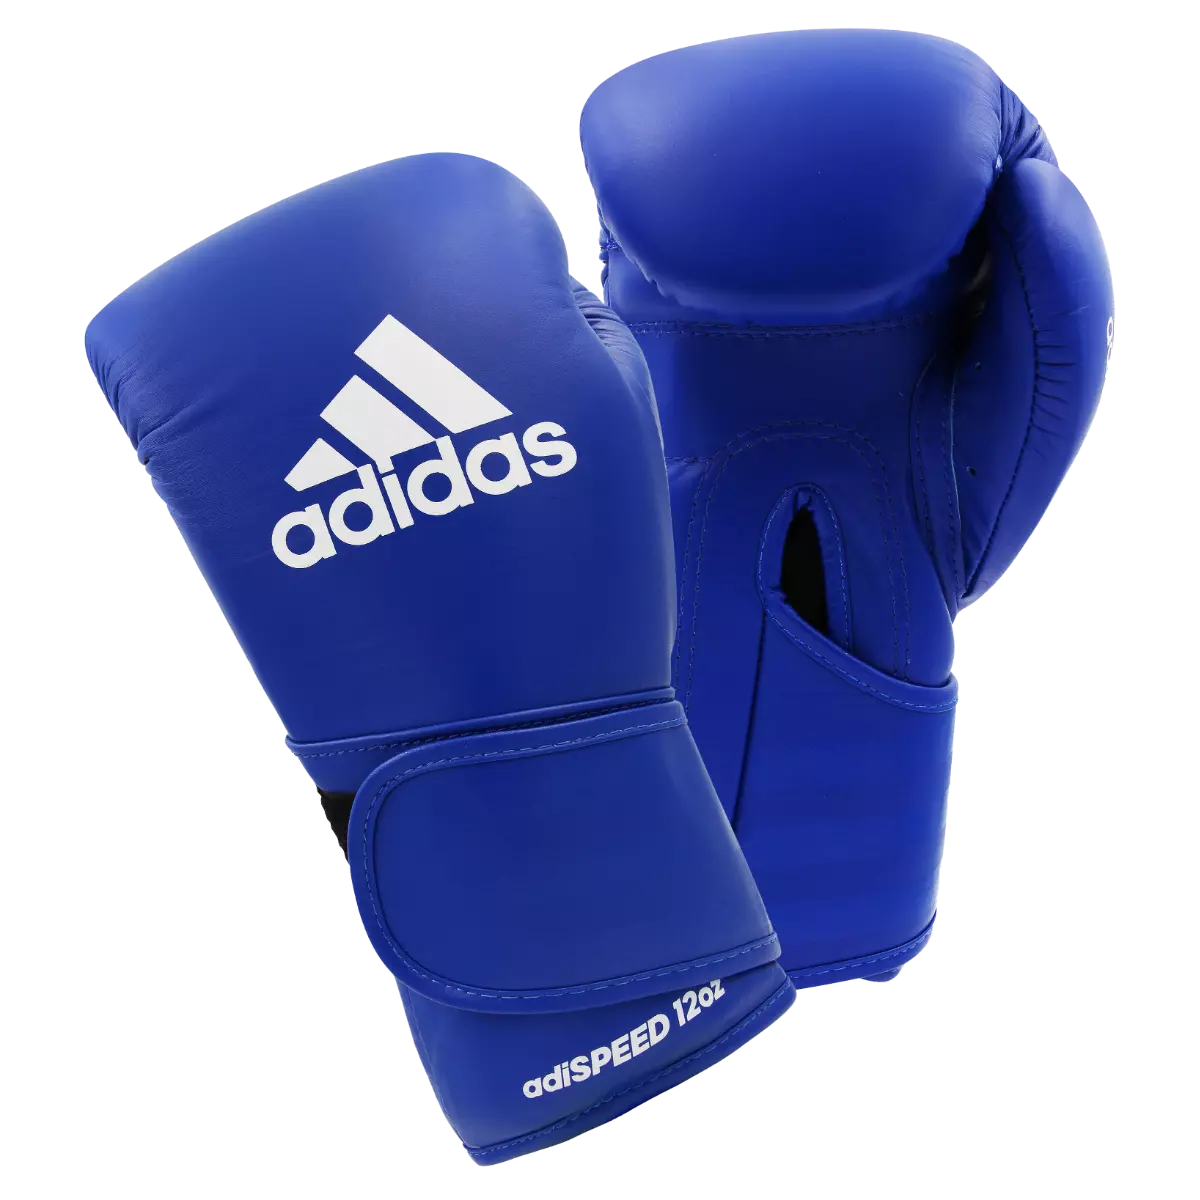 adidas Adispeed Pro Leather Boxing Gloves